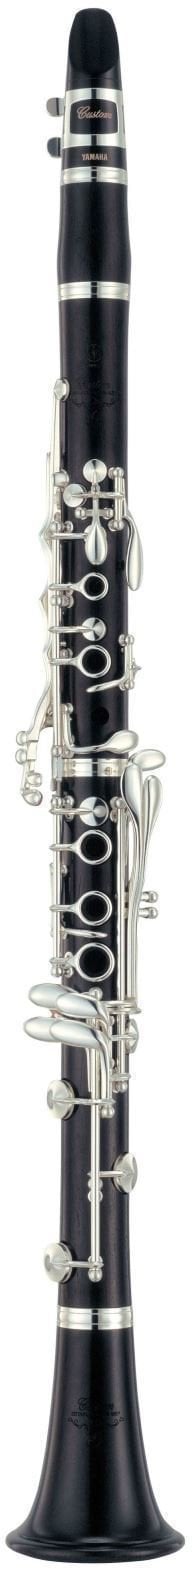 A Clarinet Yamaha YCL-CSGA III 02 A Clarinet